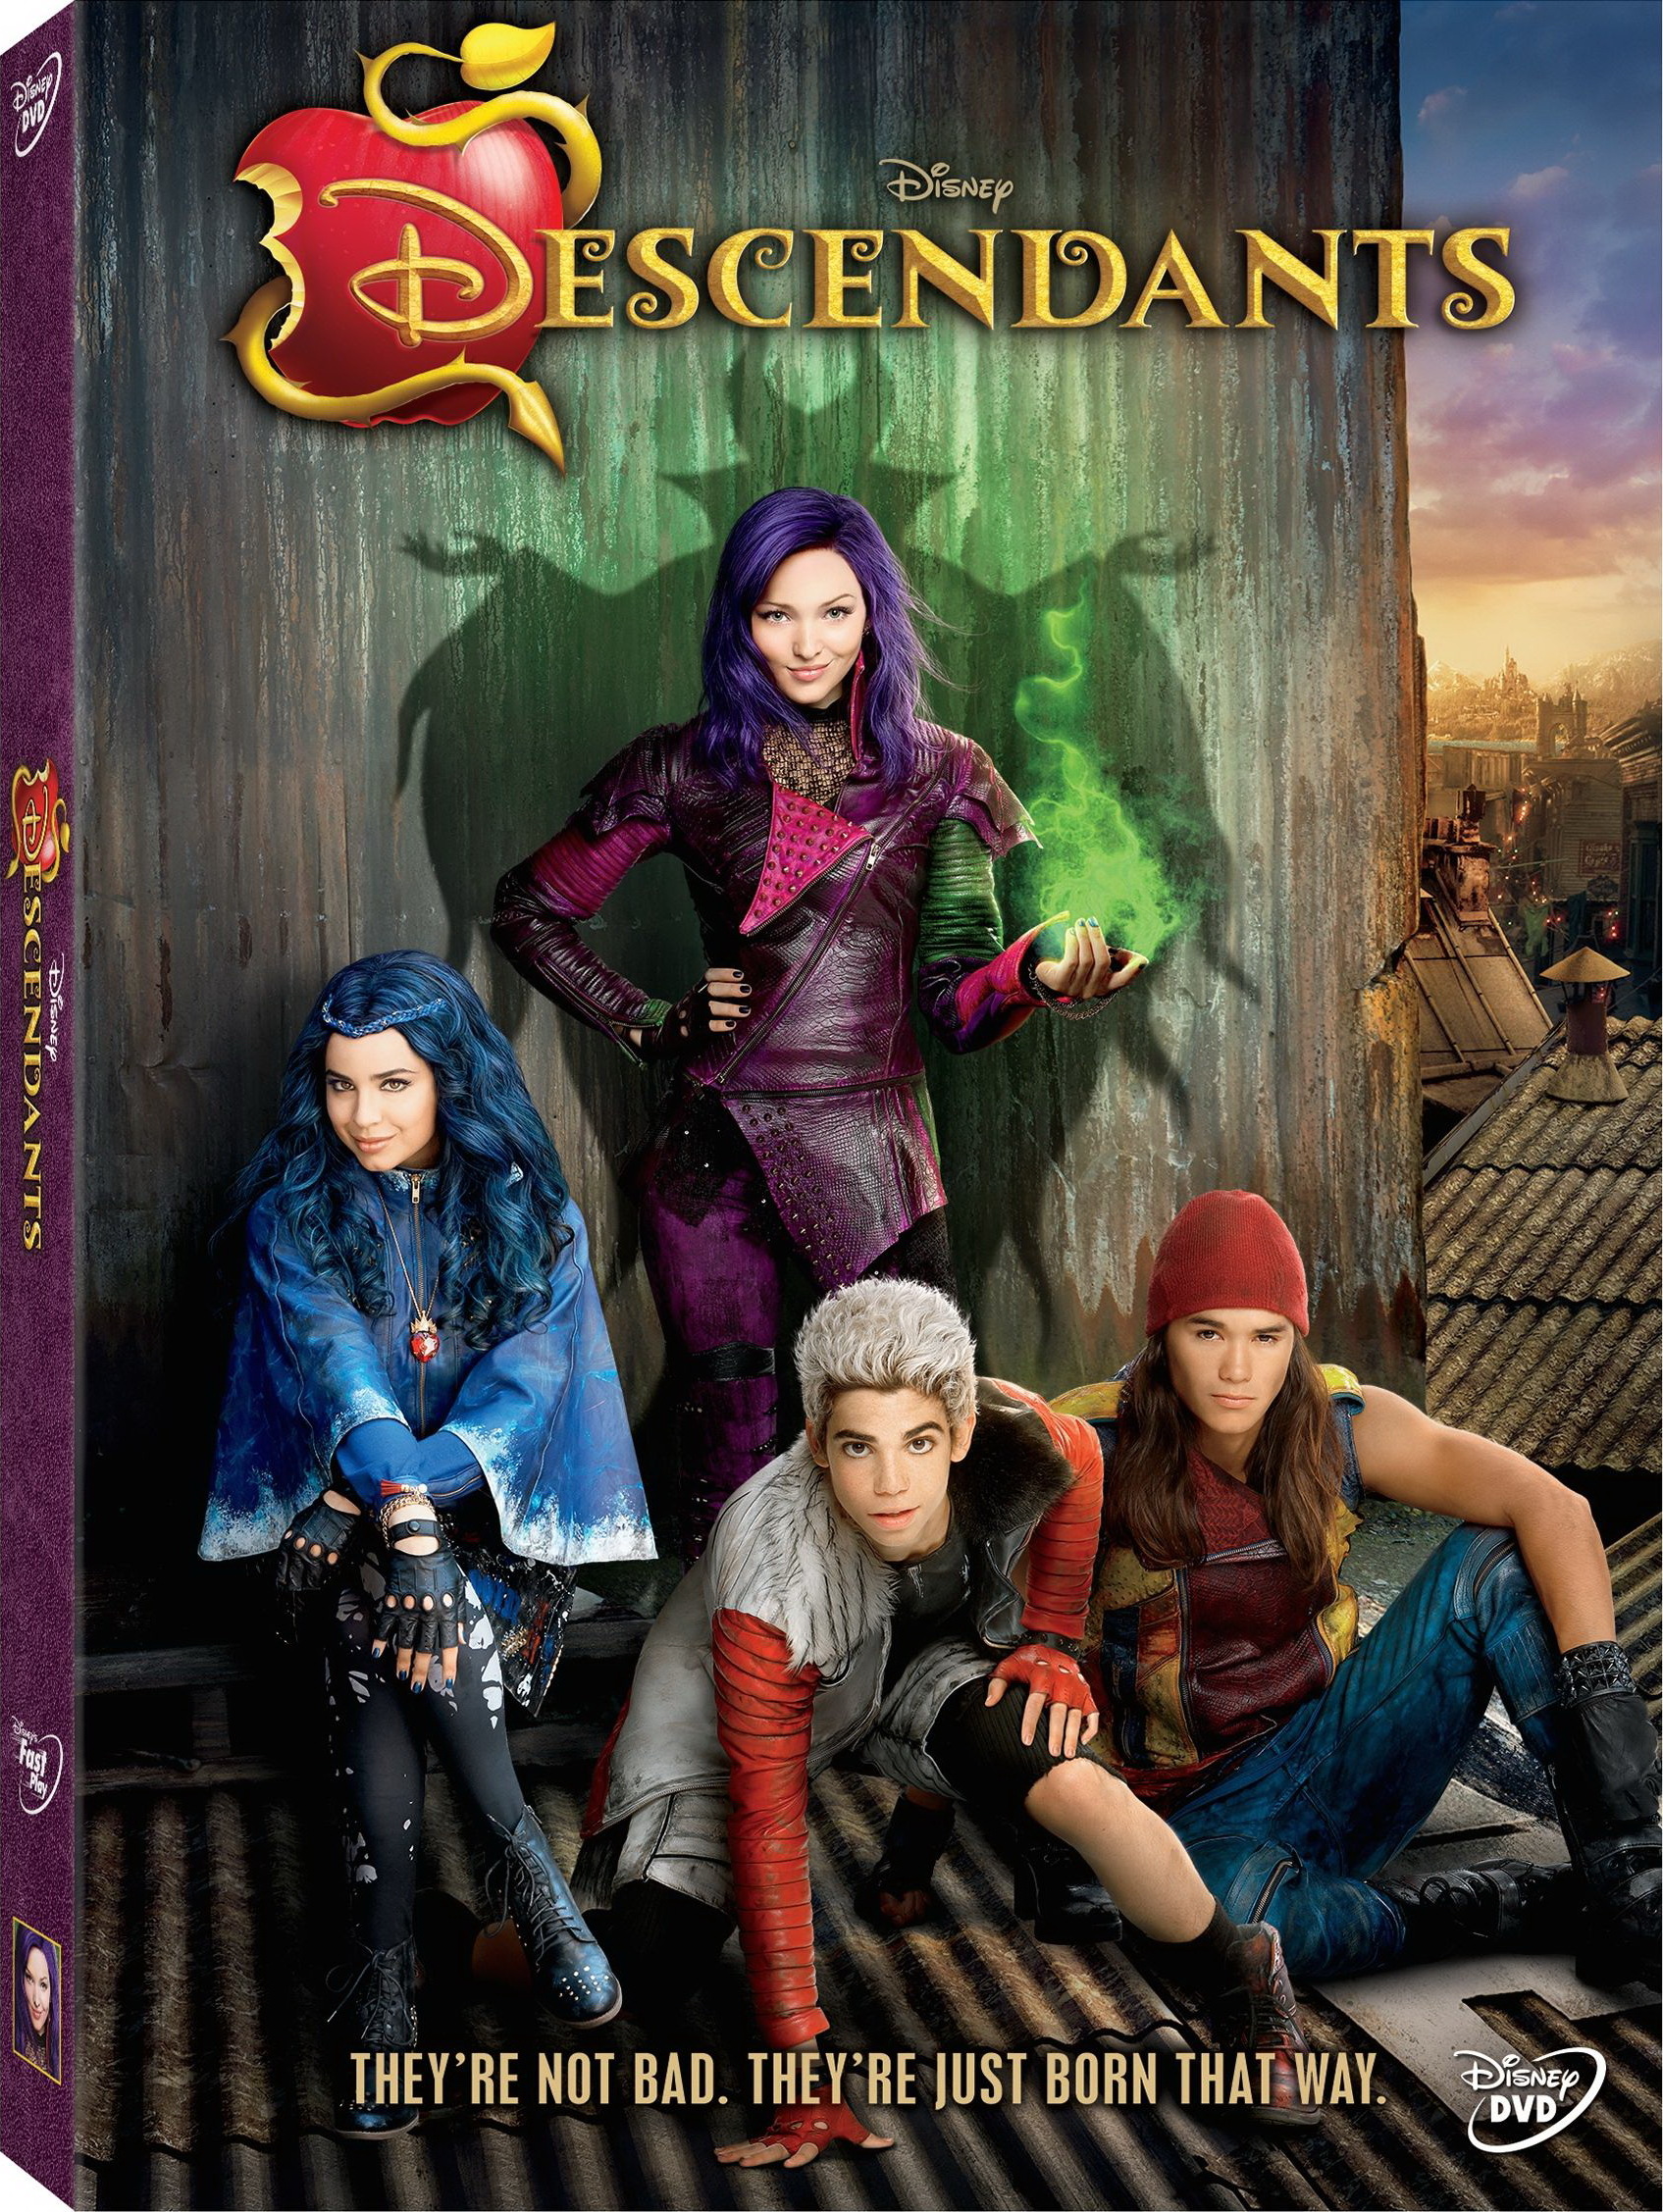 Descendants DVD Review